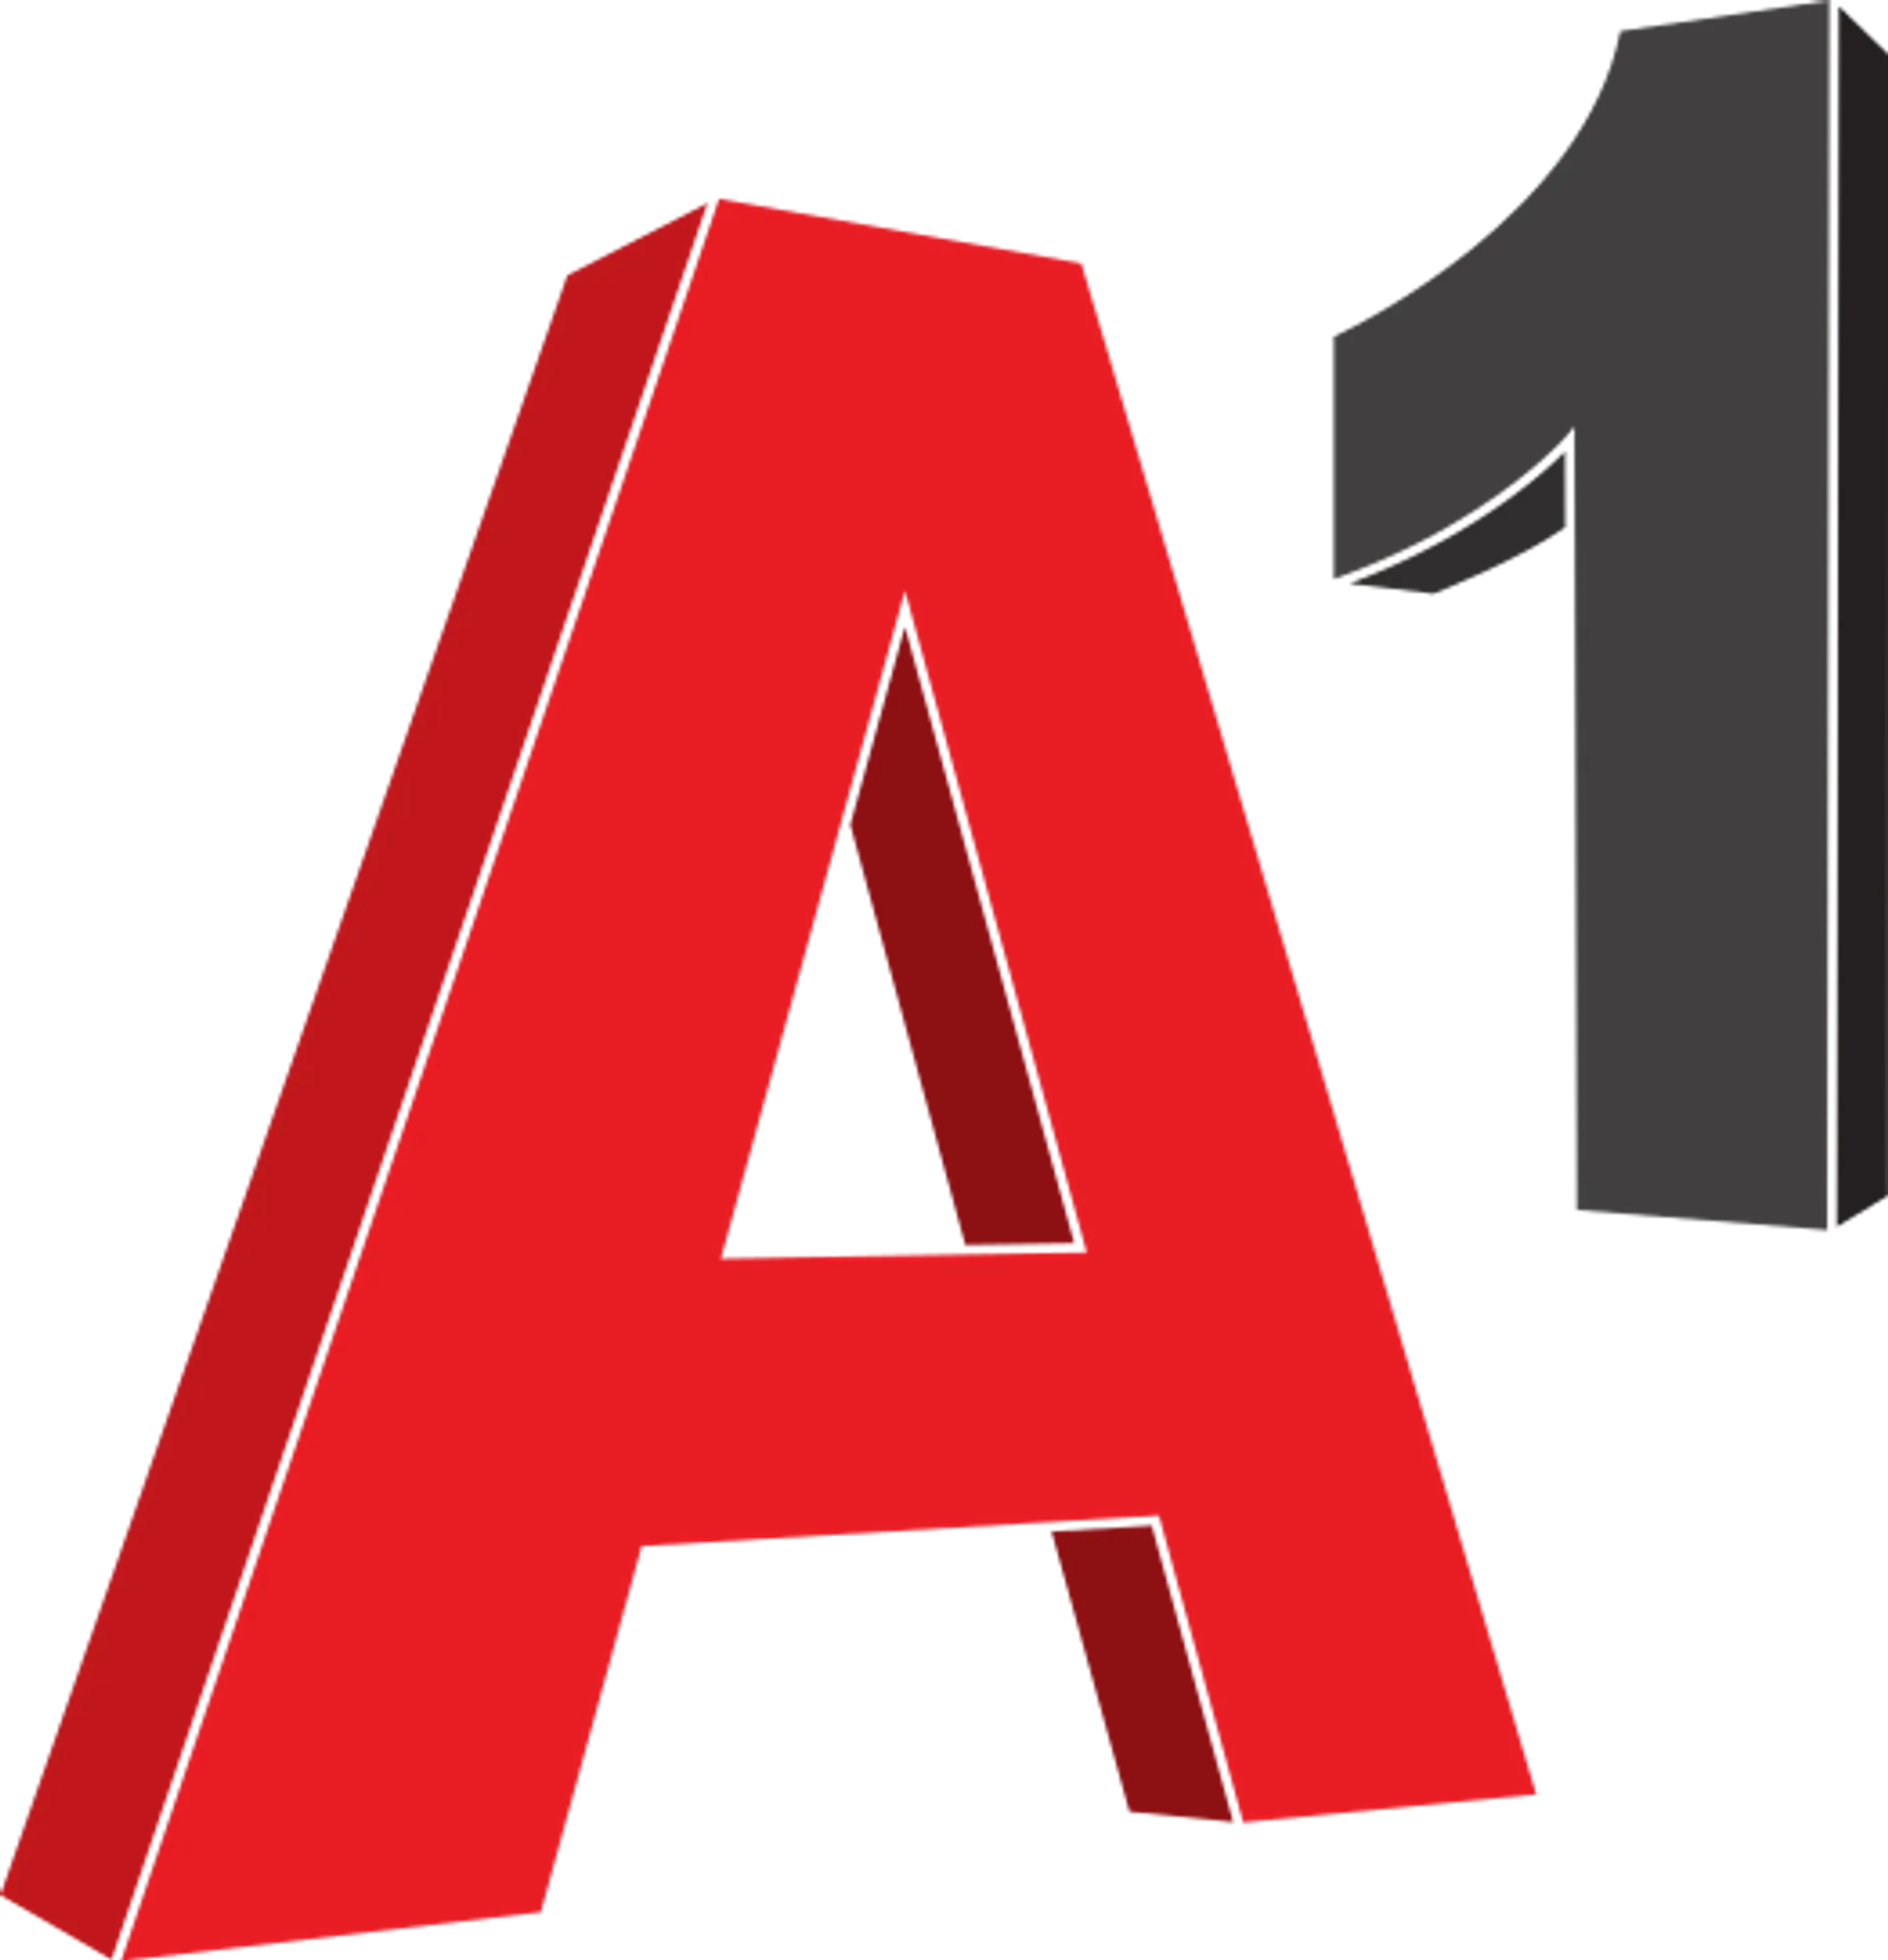 A1 logo die aktuell Flugblatt